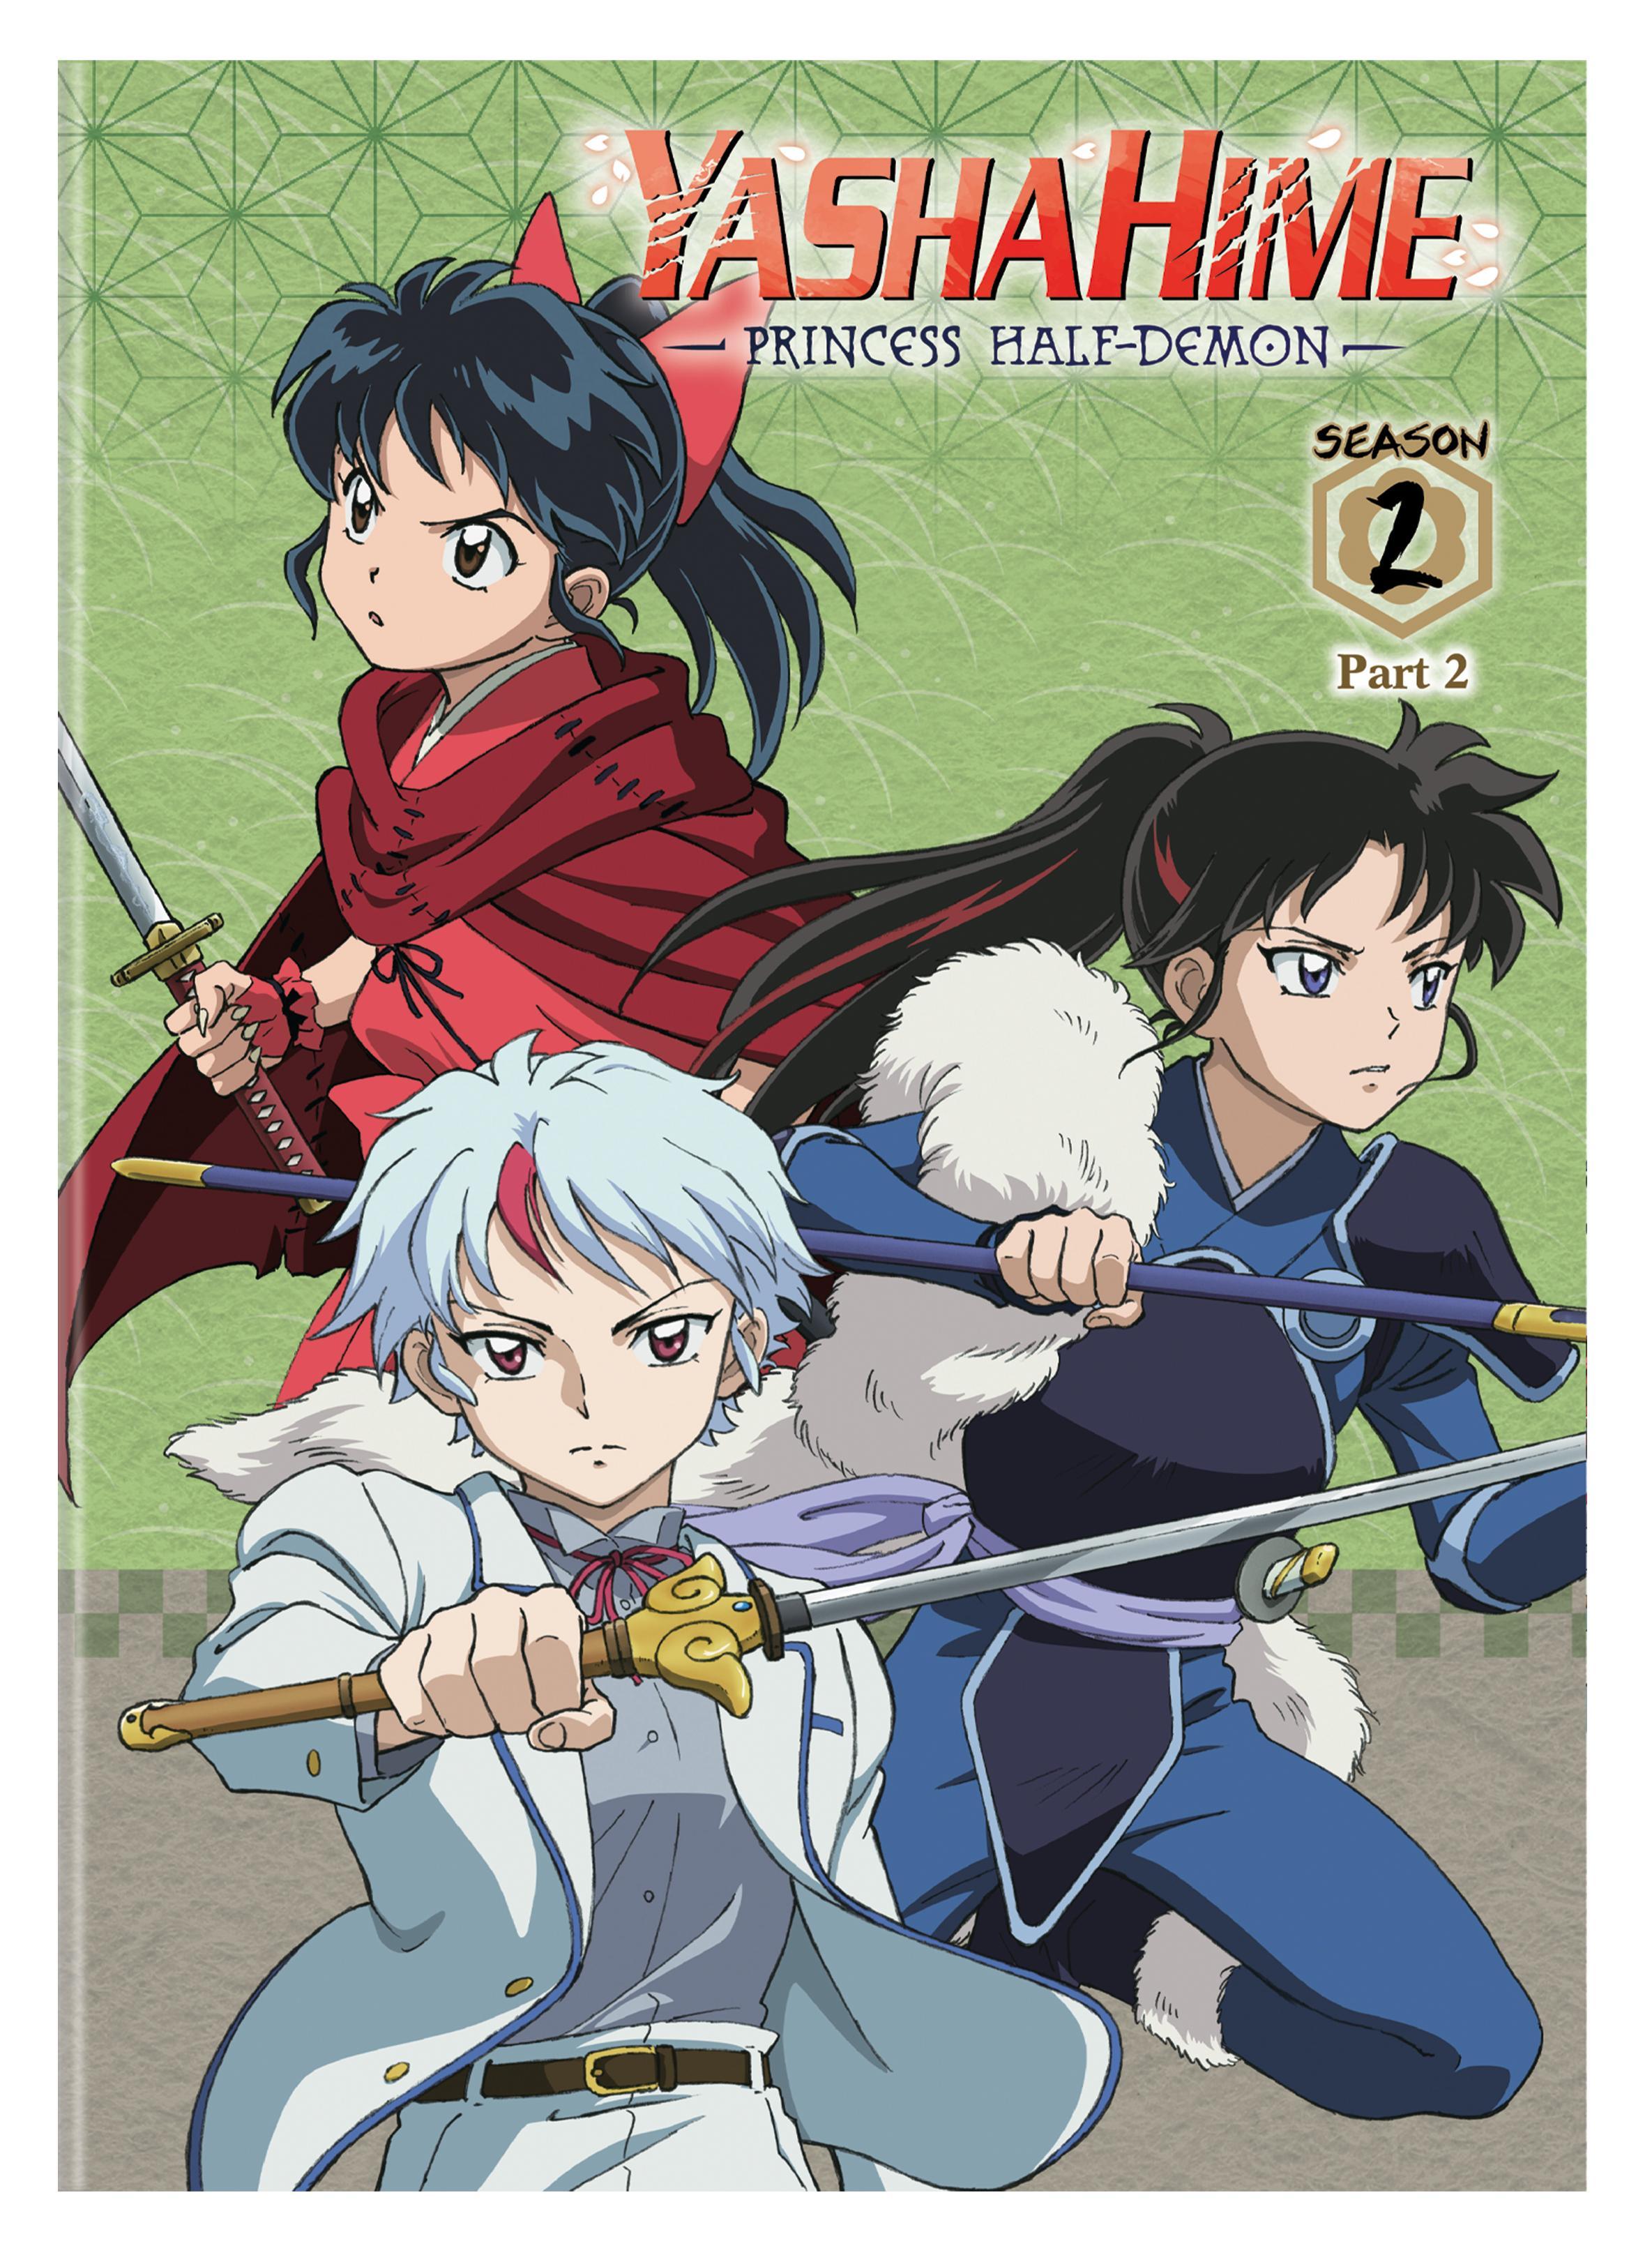 Yashahime: Princess Half-Demon, Vol. 4 (Volume 4) : Takahashi, Rumiko,  Shiina, Takashi, Sumisawa, Katsuyuki: Amazon.in: Books